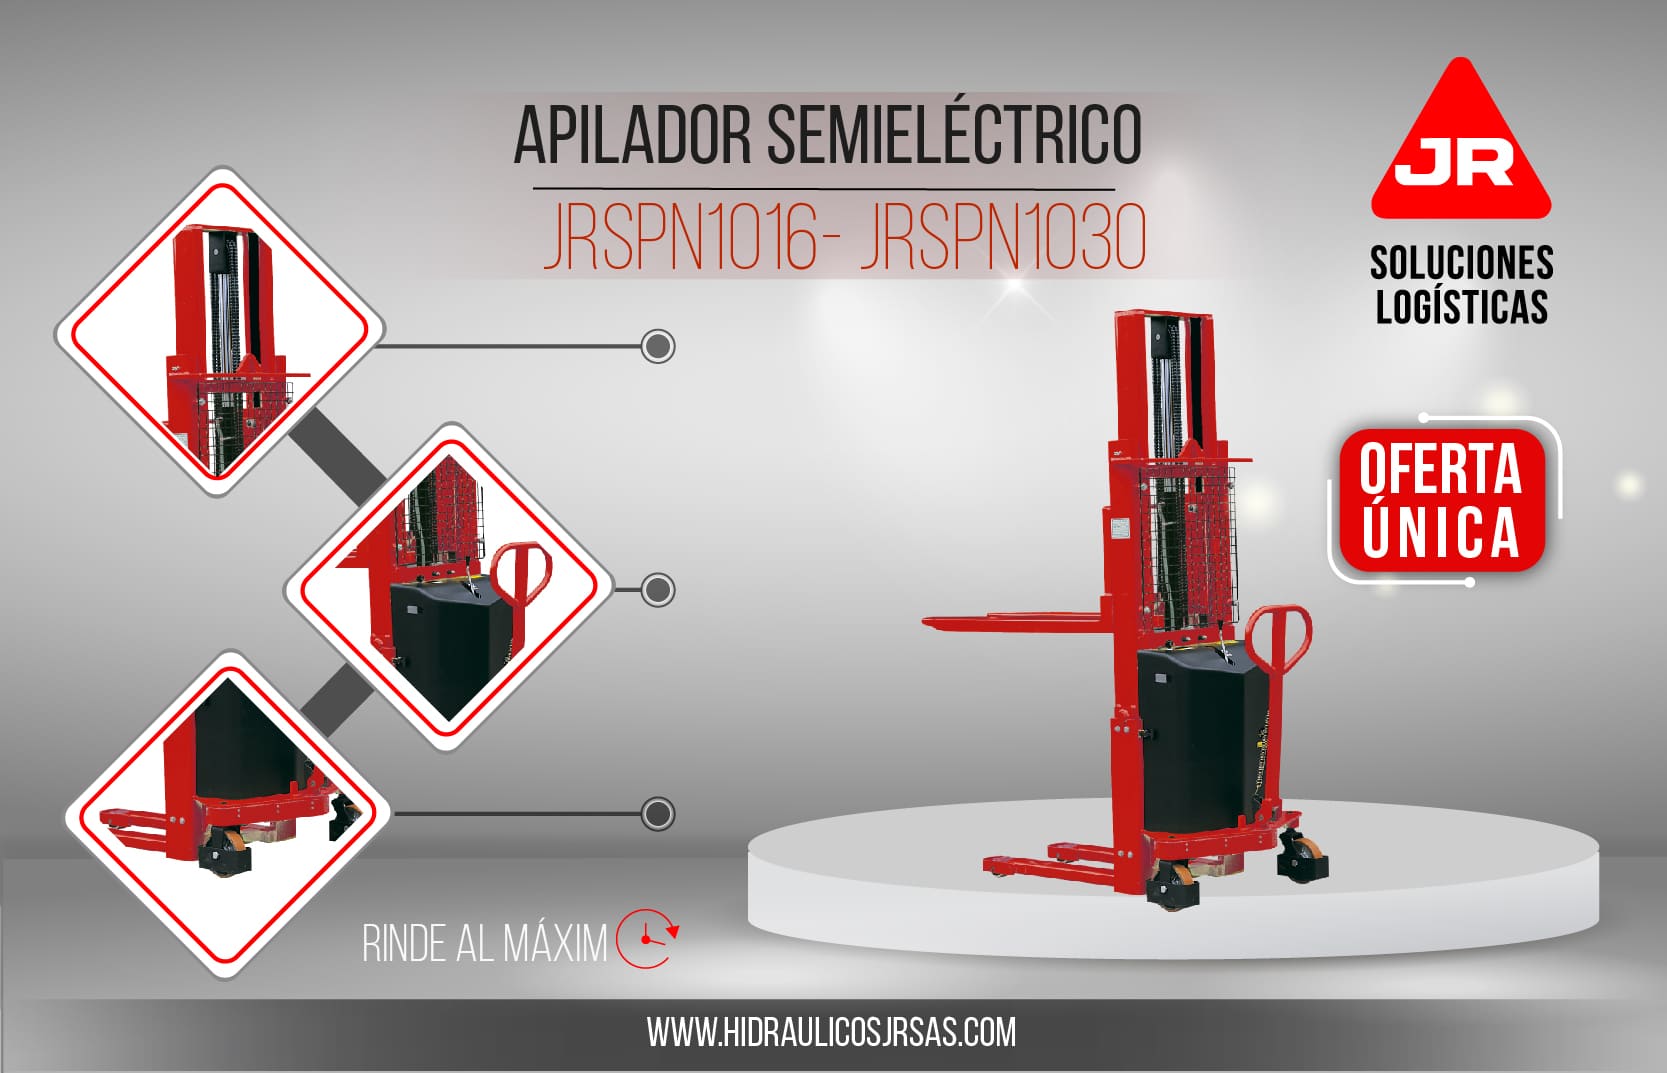 Apilador Semieléctrico Ref. JRSPN1016 - JRSPN1030